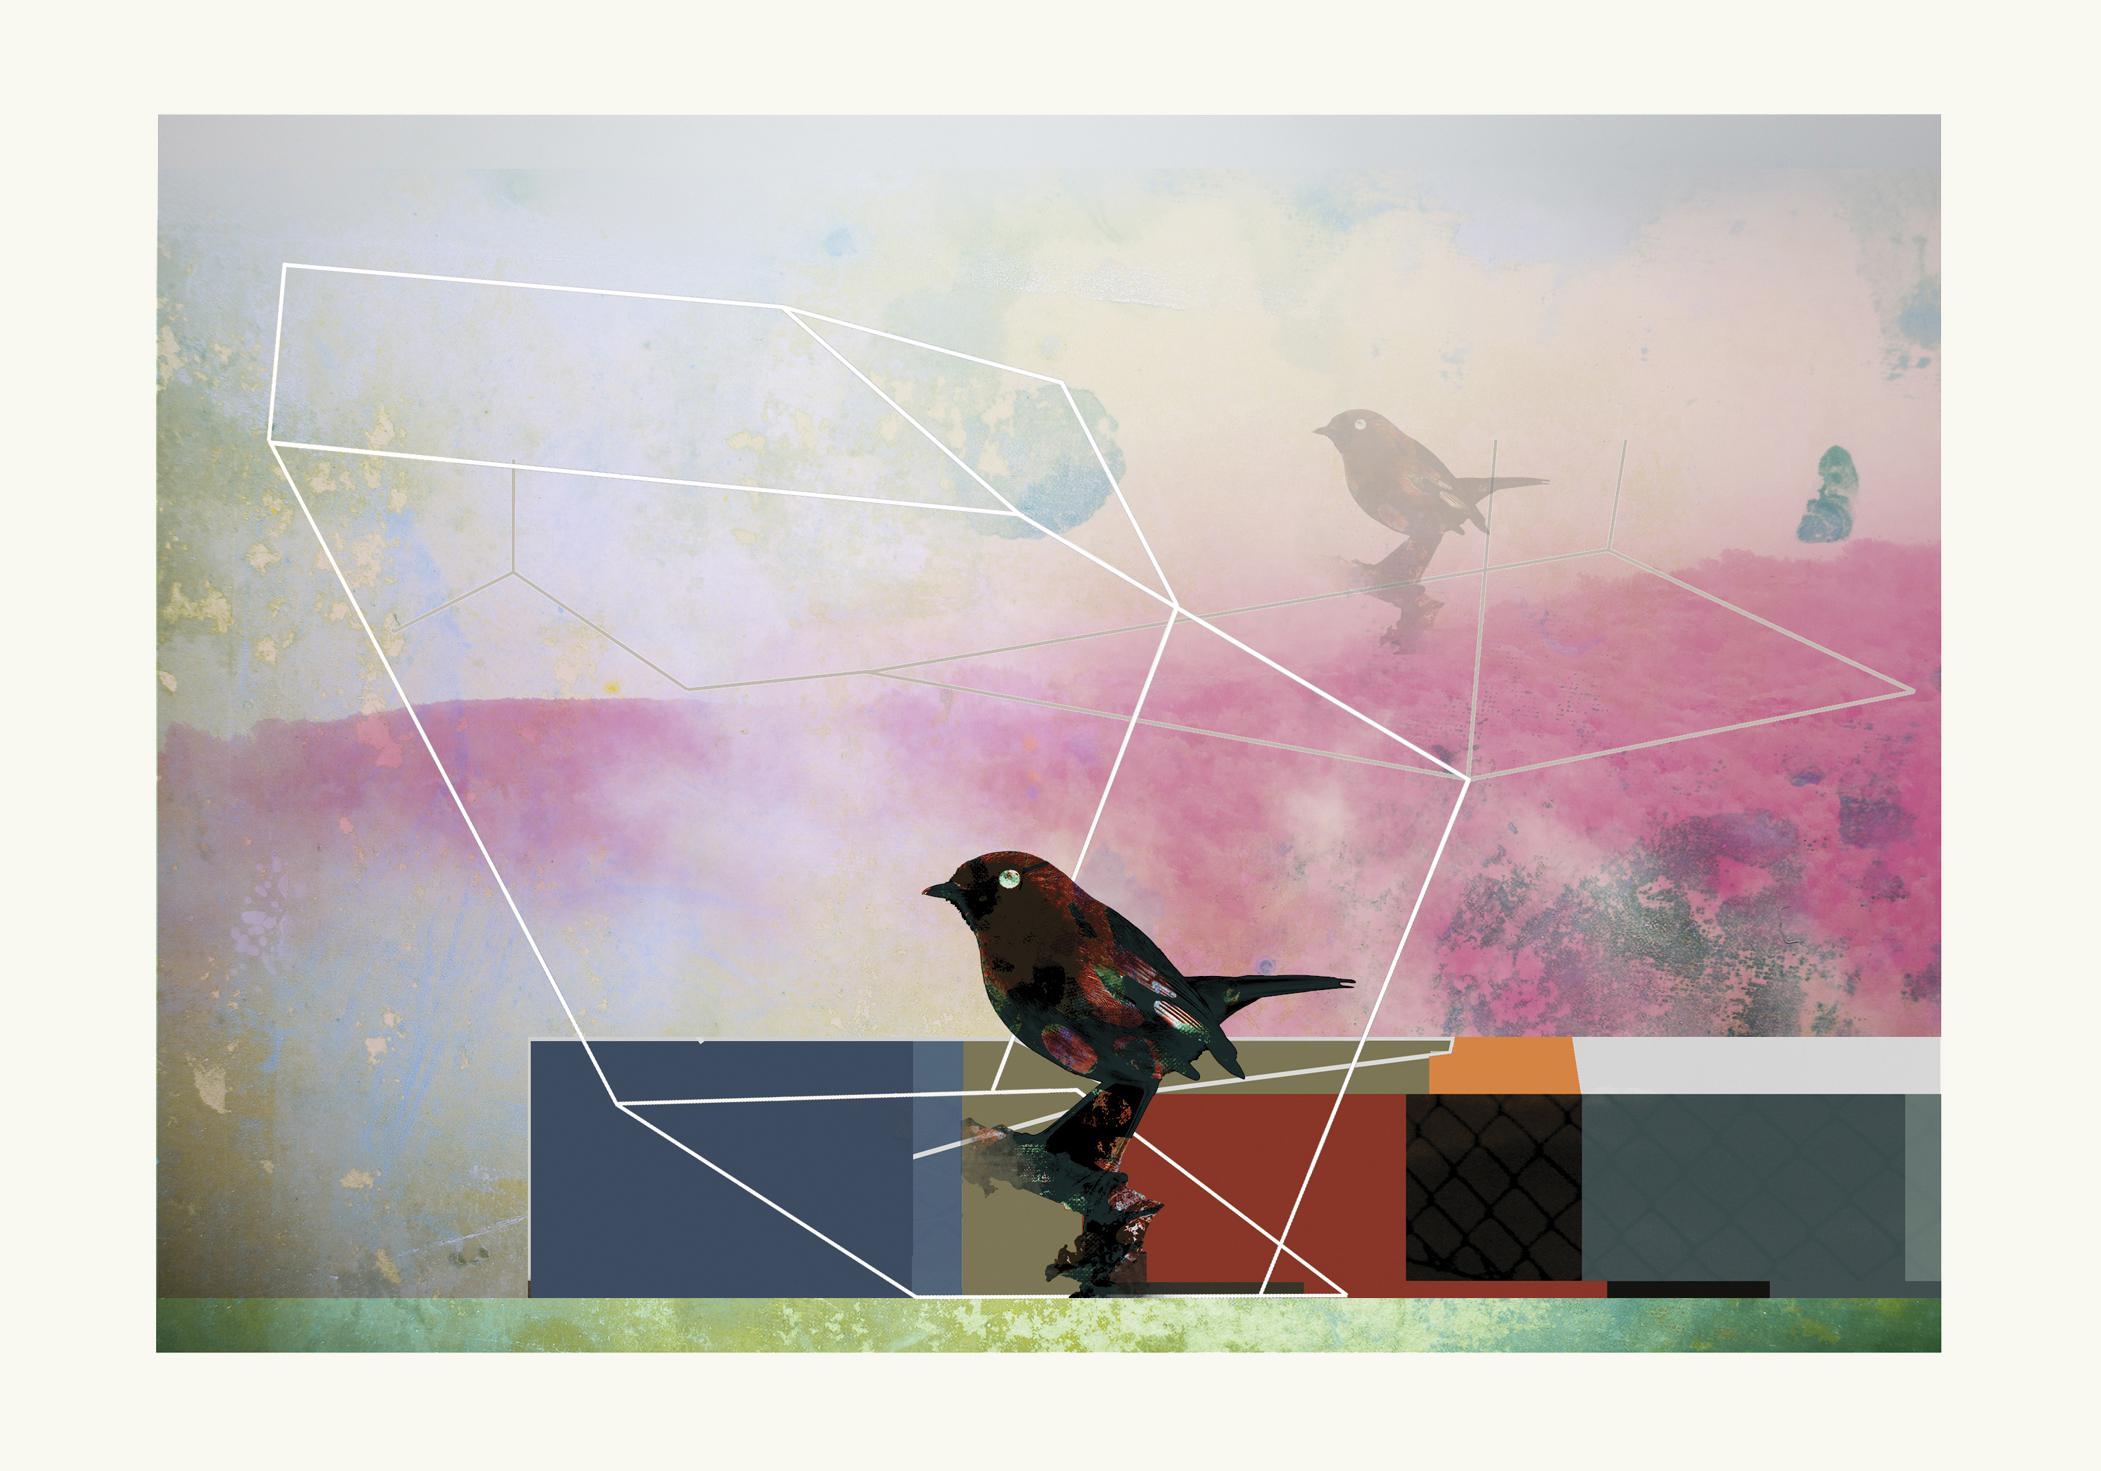 Oiseaux 5 - Contemporain, abstrait, gestuel, art urbain, pop, moderne, géométrique - Mixed Media Art de Francisco Nicolás